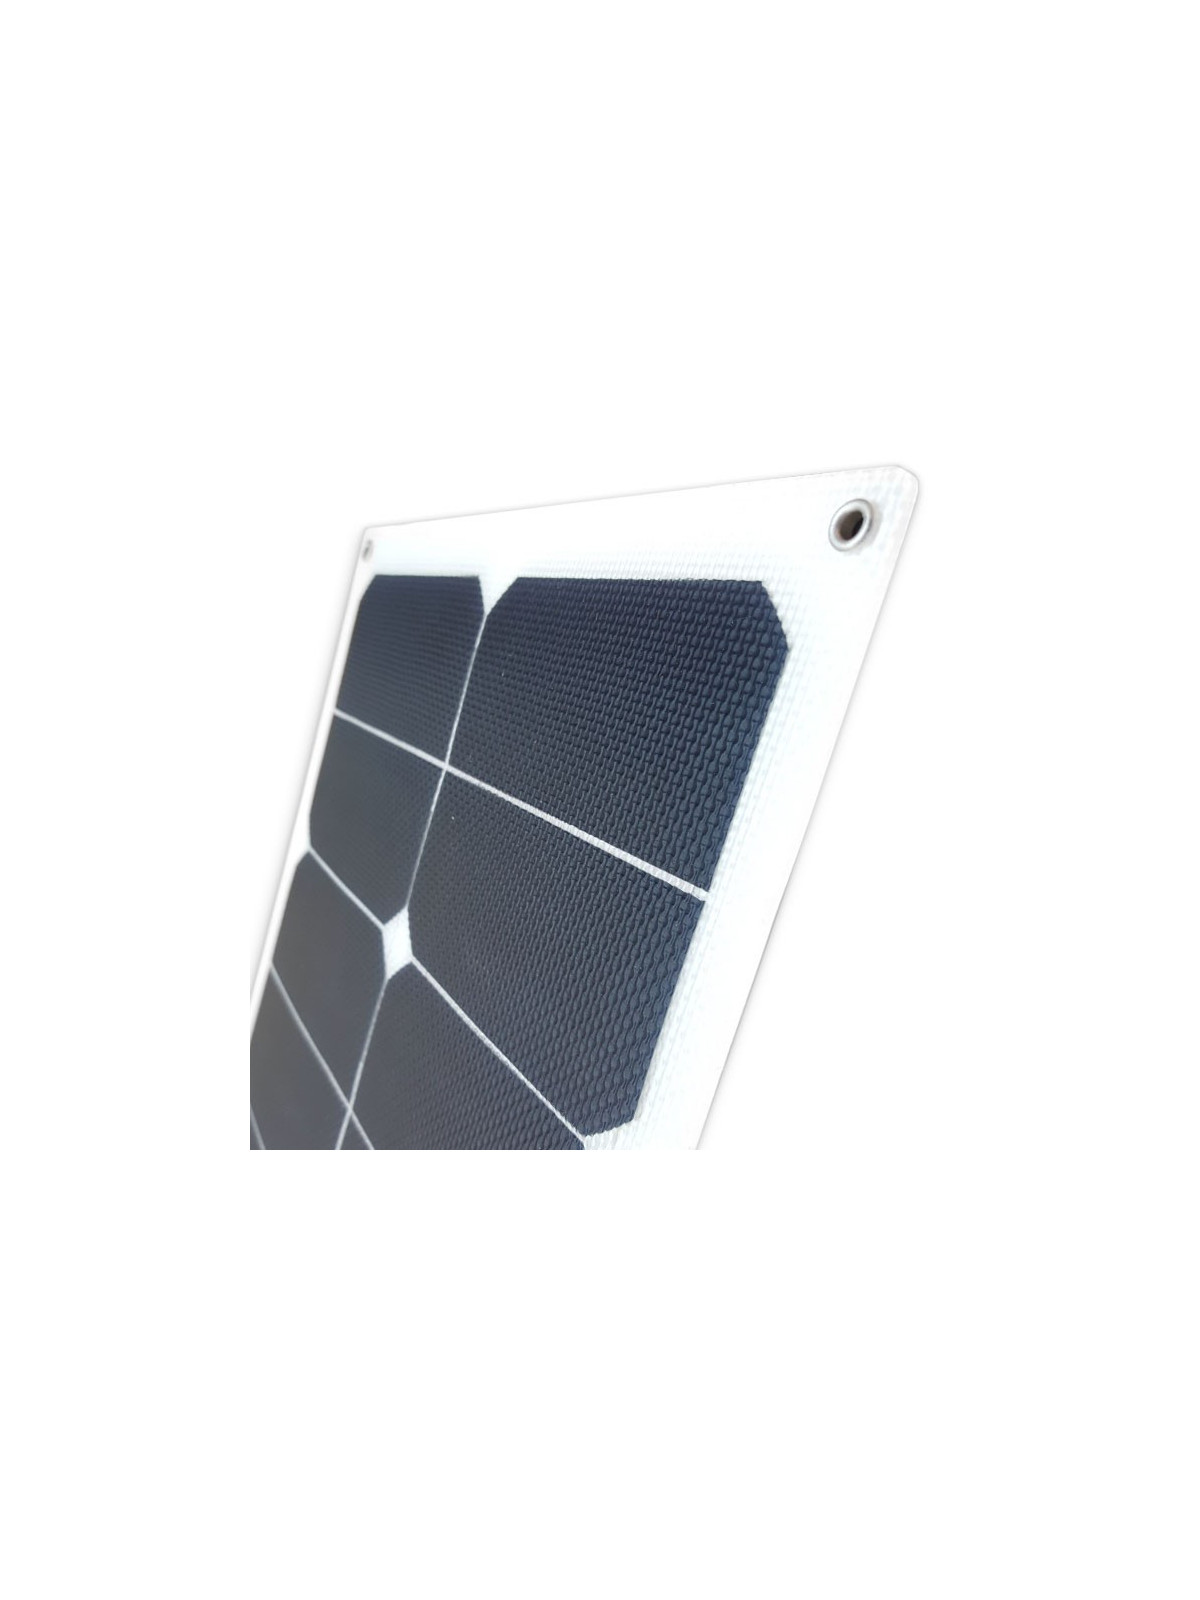 MX FLEX XTD Solar Panel 50Wp